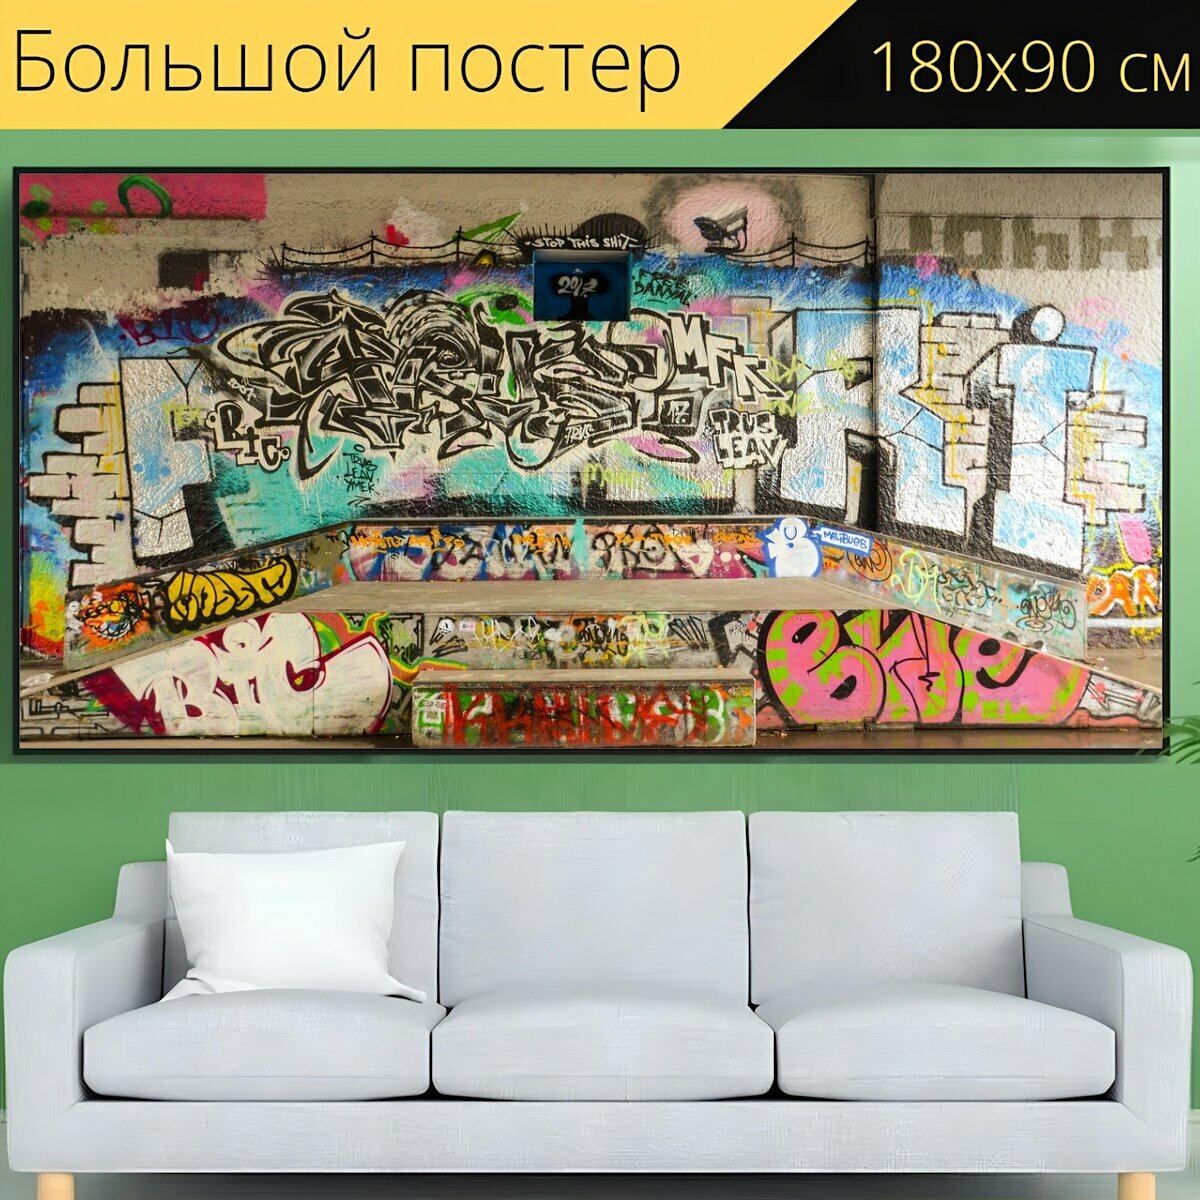 Большой постер "Граффити, изобразительное искусство, скейтборд" 180 x 90 см. для интерьера